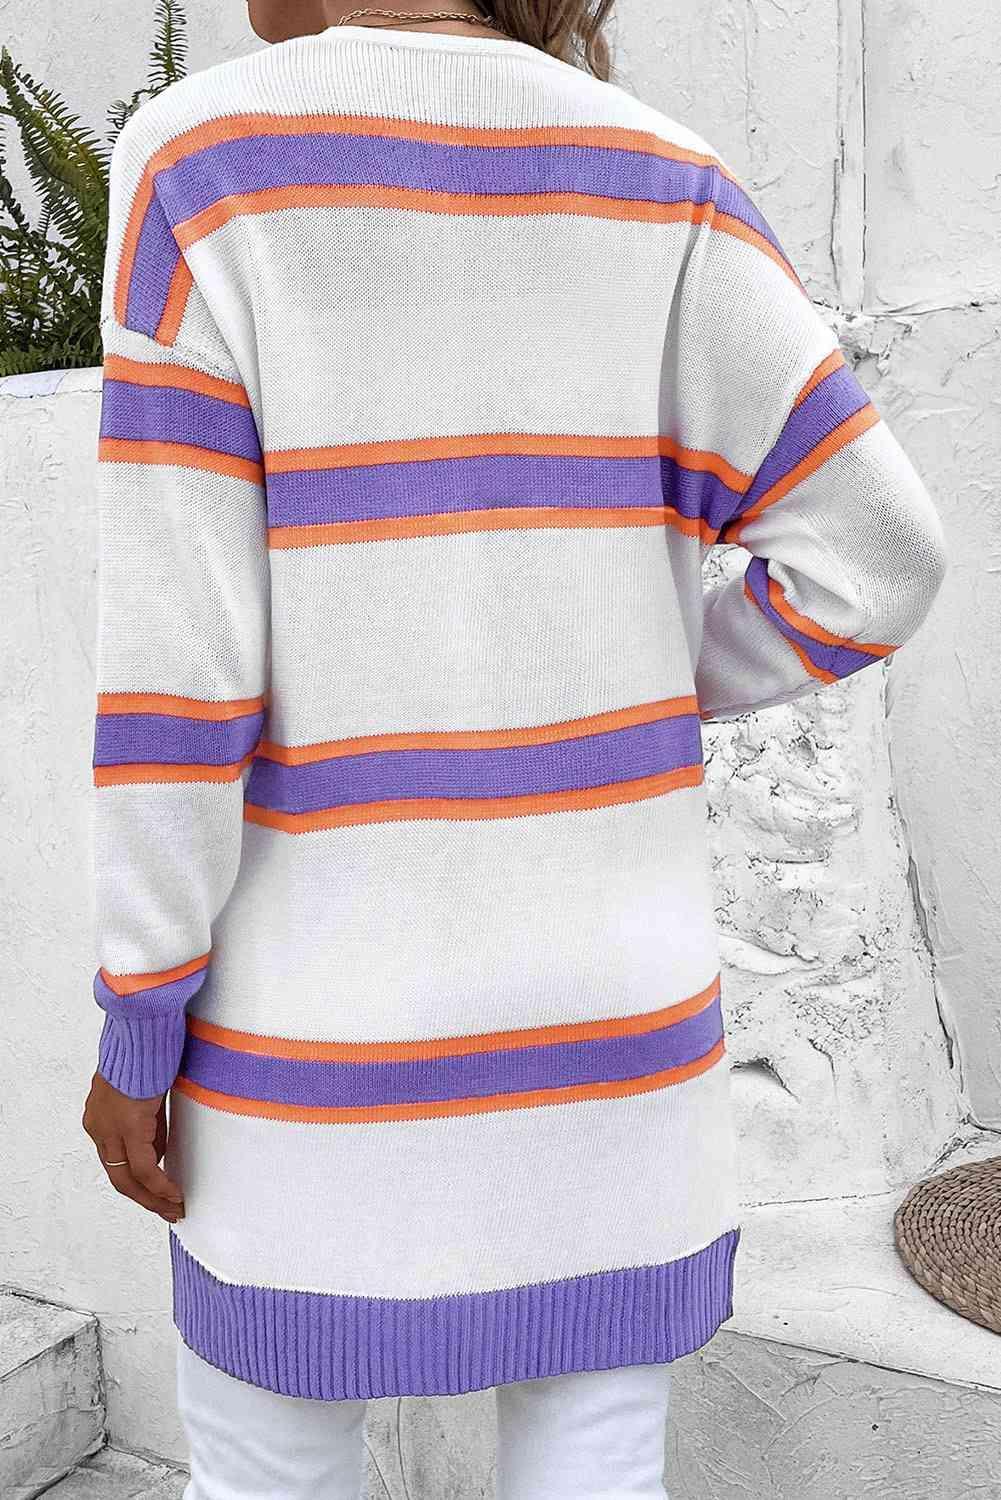 Warm Wrap Knit Long Striped Cardigan-MXSTUDIO.COM